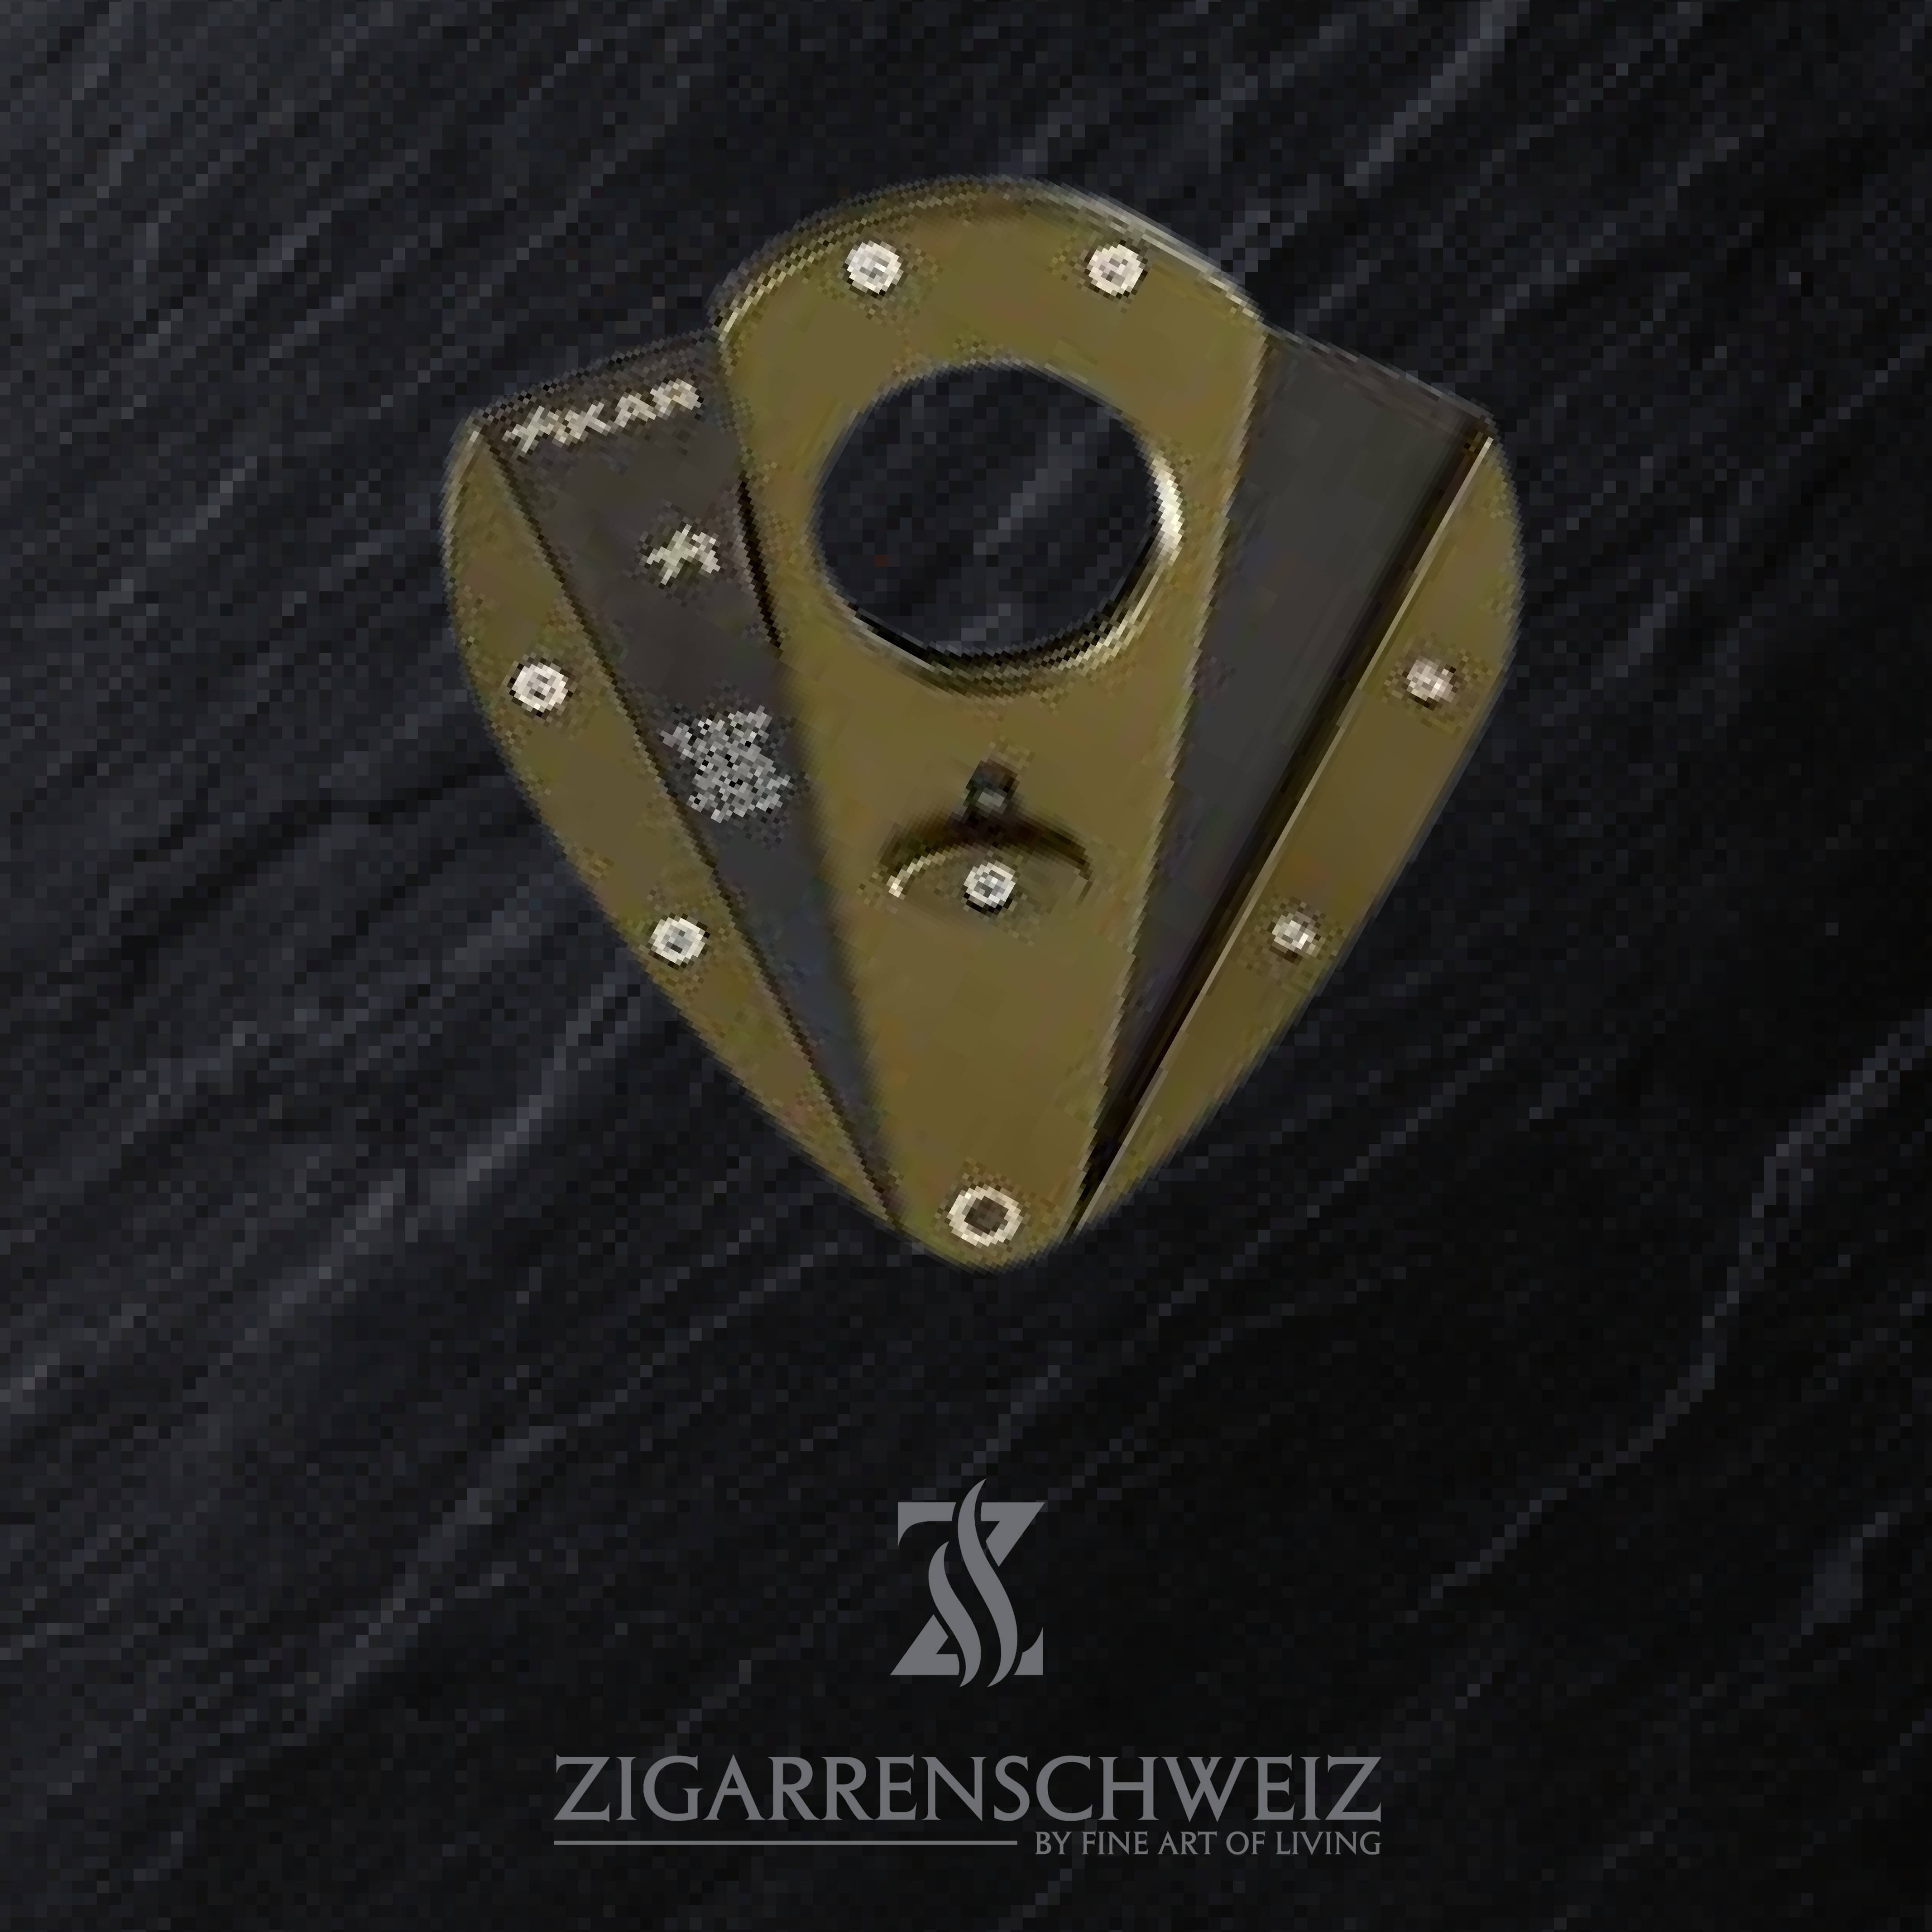 Xikar Xi1 Zigarren Cutter Farbe: Oliv-Grün, Klingen Farbe: Schwarz, geöffnet